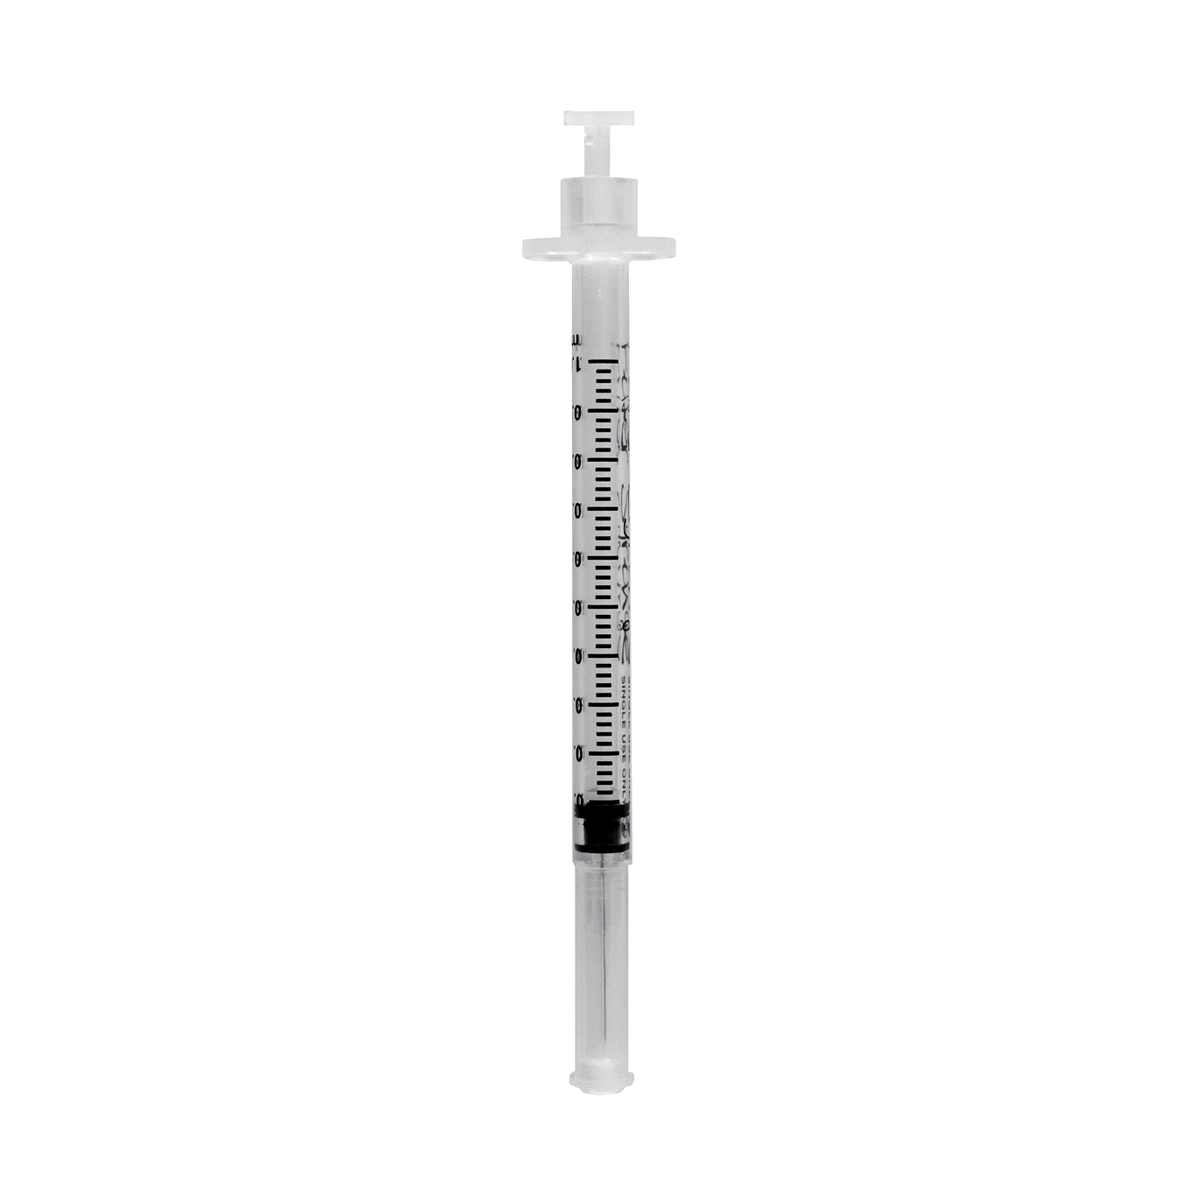 1ml fixed needle Vernacare 'Filter Syringe